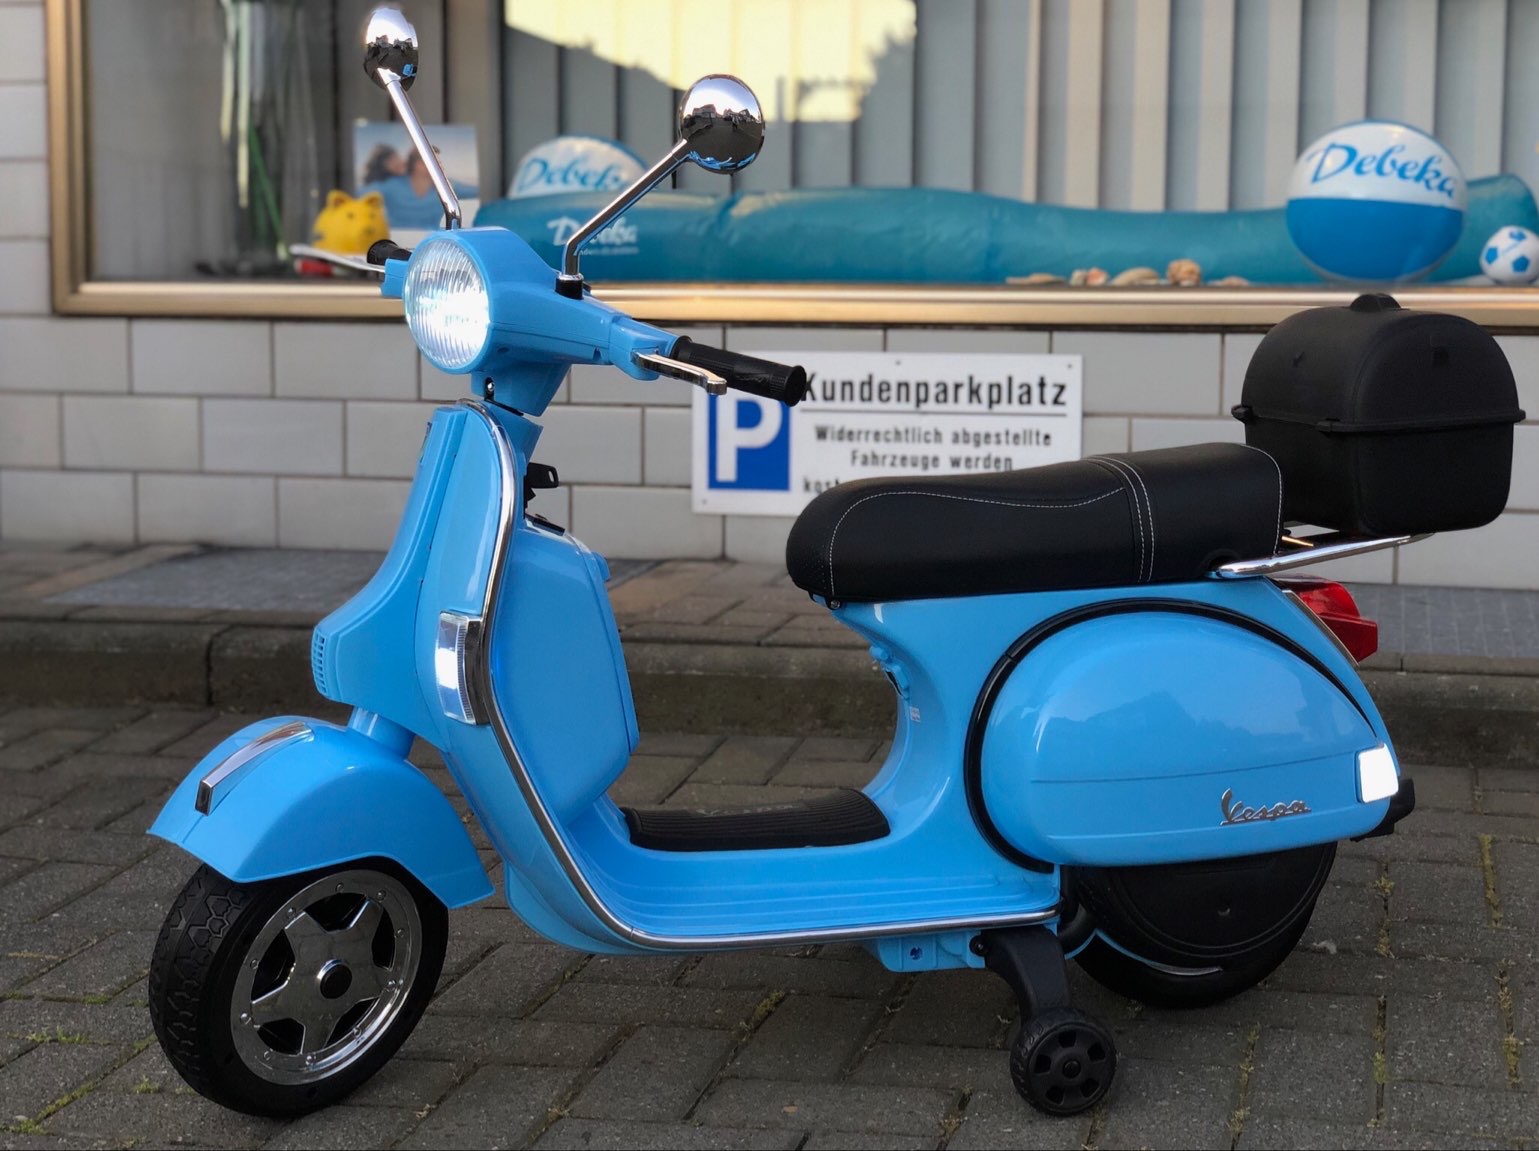 Wir versichern Moped, Roller und E-Scooter. Ihr Team der Debeka in Köln Höhenhaus